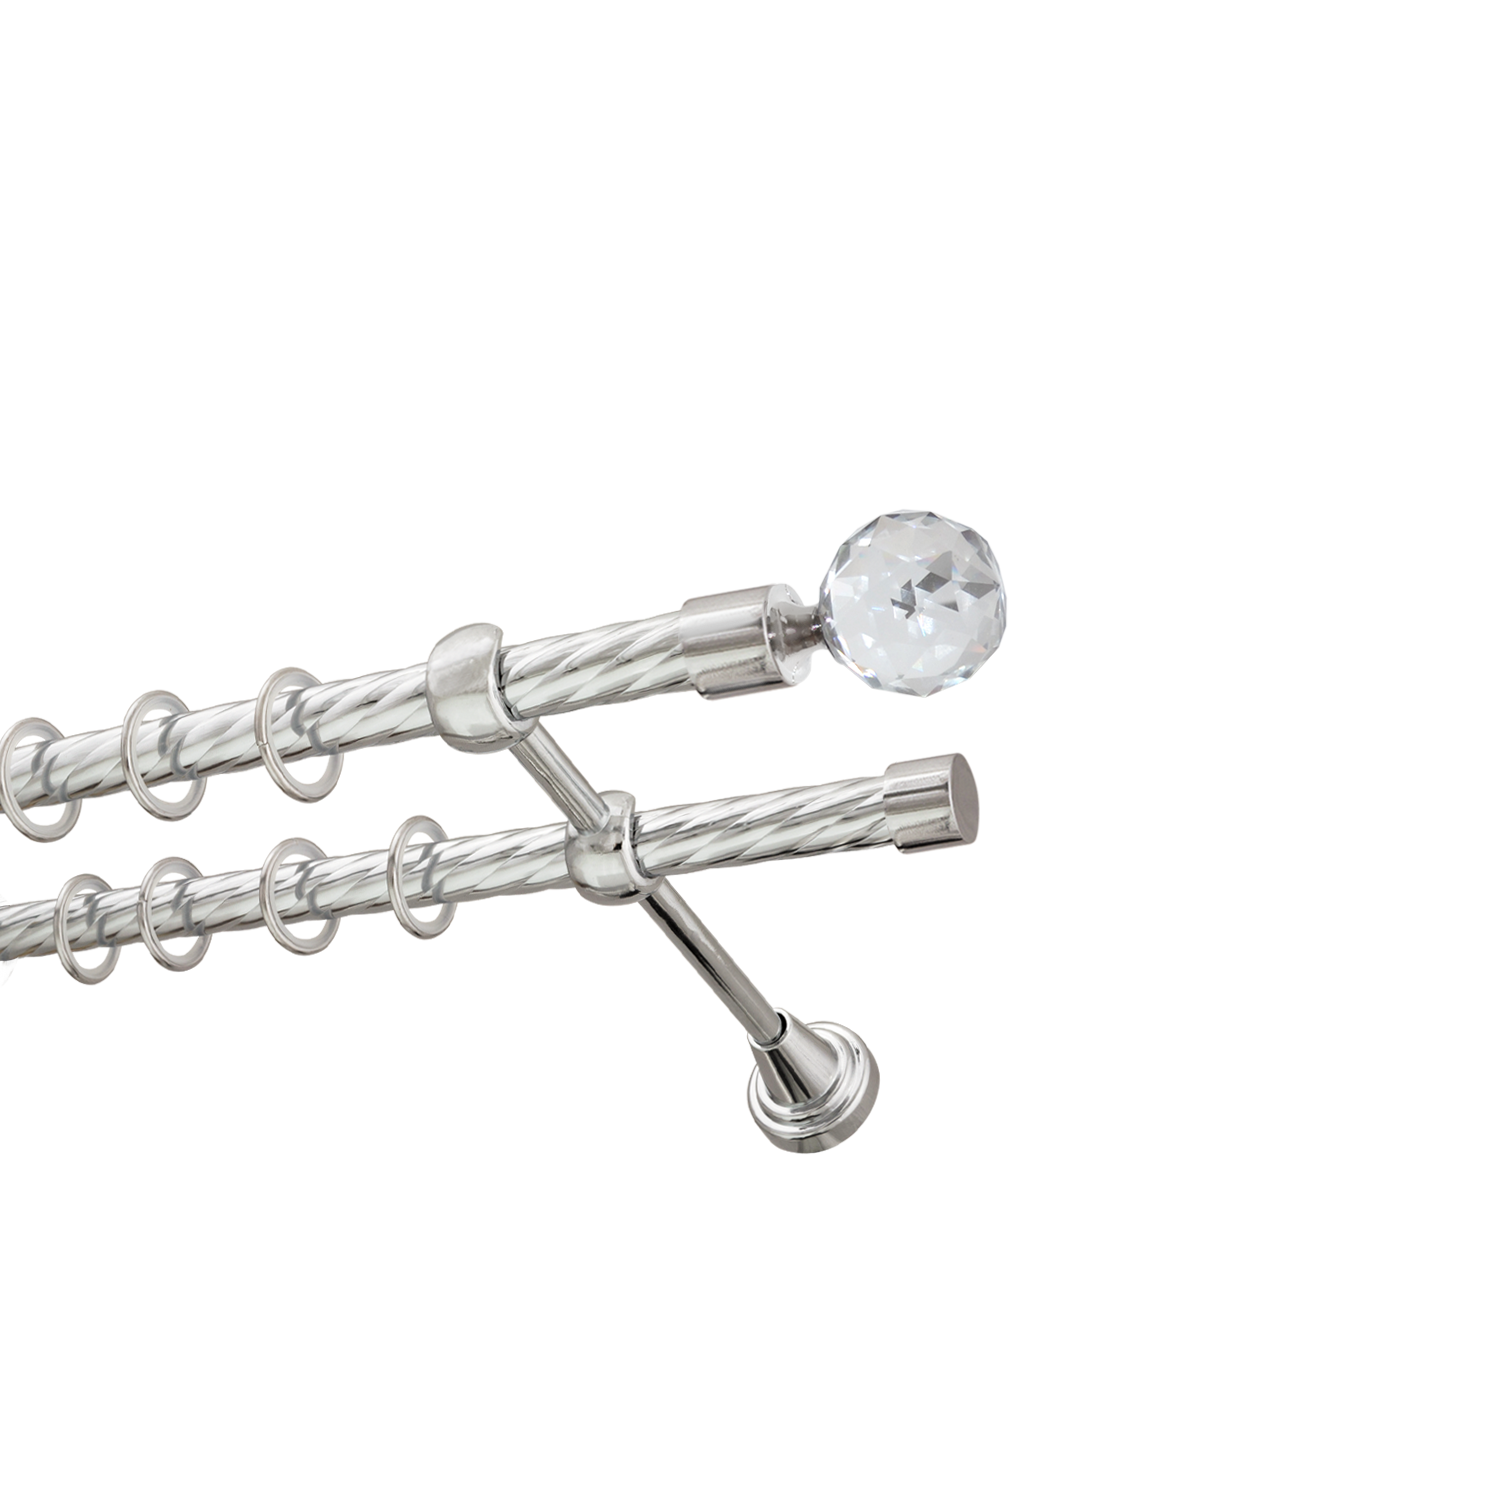 Металлический карниз для штор Карат, двухрядный 16/16 мм, серебро, витая штанга, длина 300 см